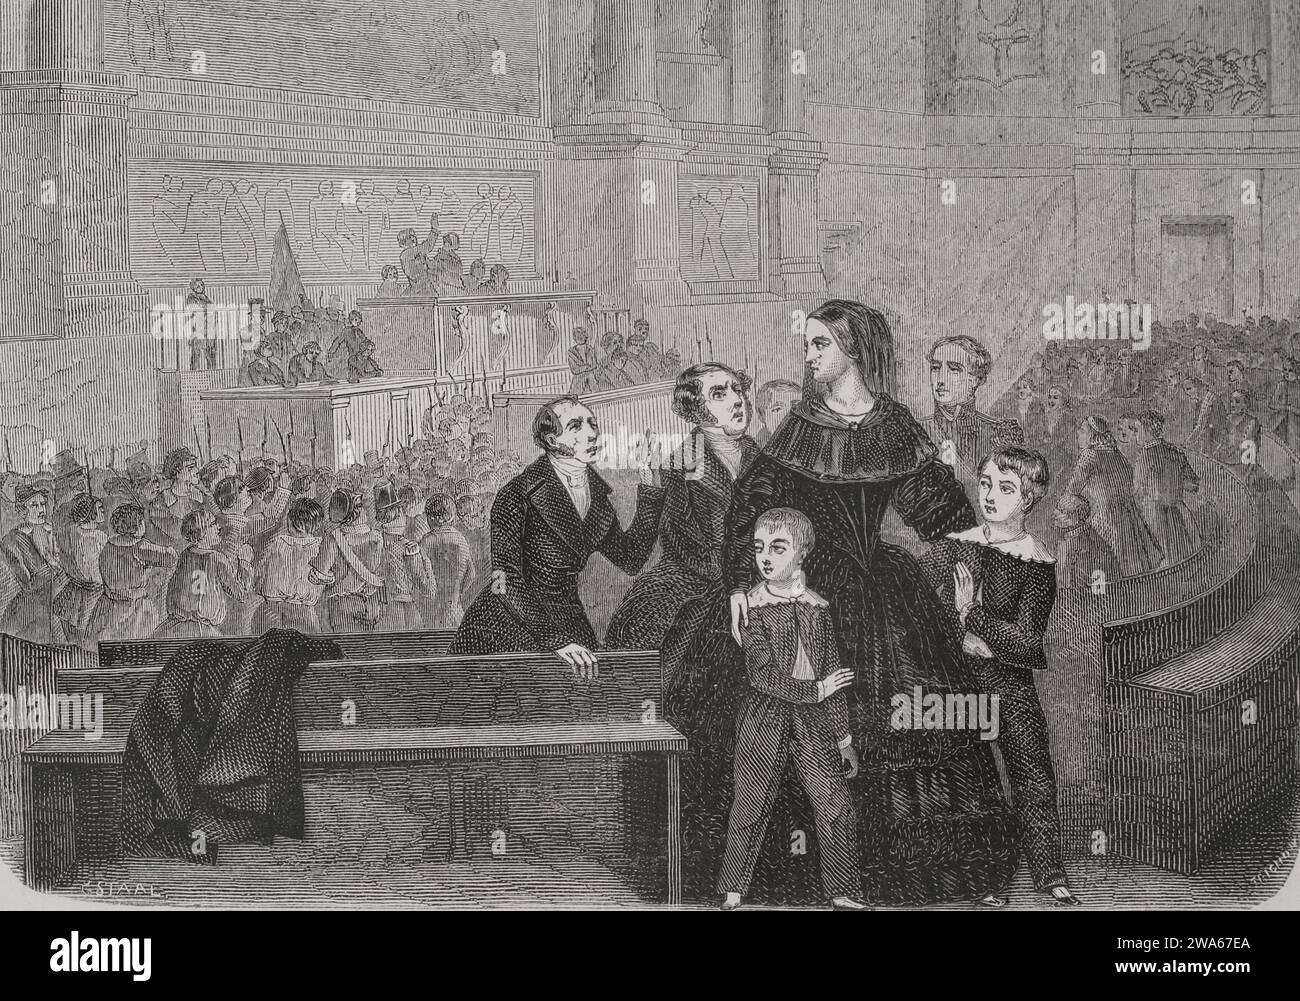 Révolution française de 1848. Les Parisiens prennent les armes les 23 et 24 février 1848, entraînant l'abdication du roi Louis-Philippe Ier (1773-1850) en fa Banque D'Images